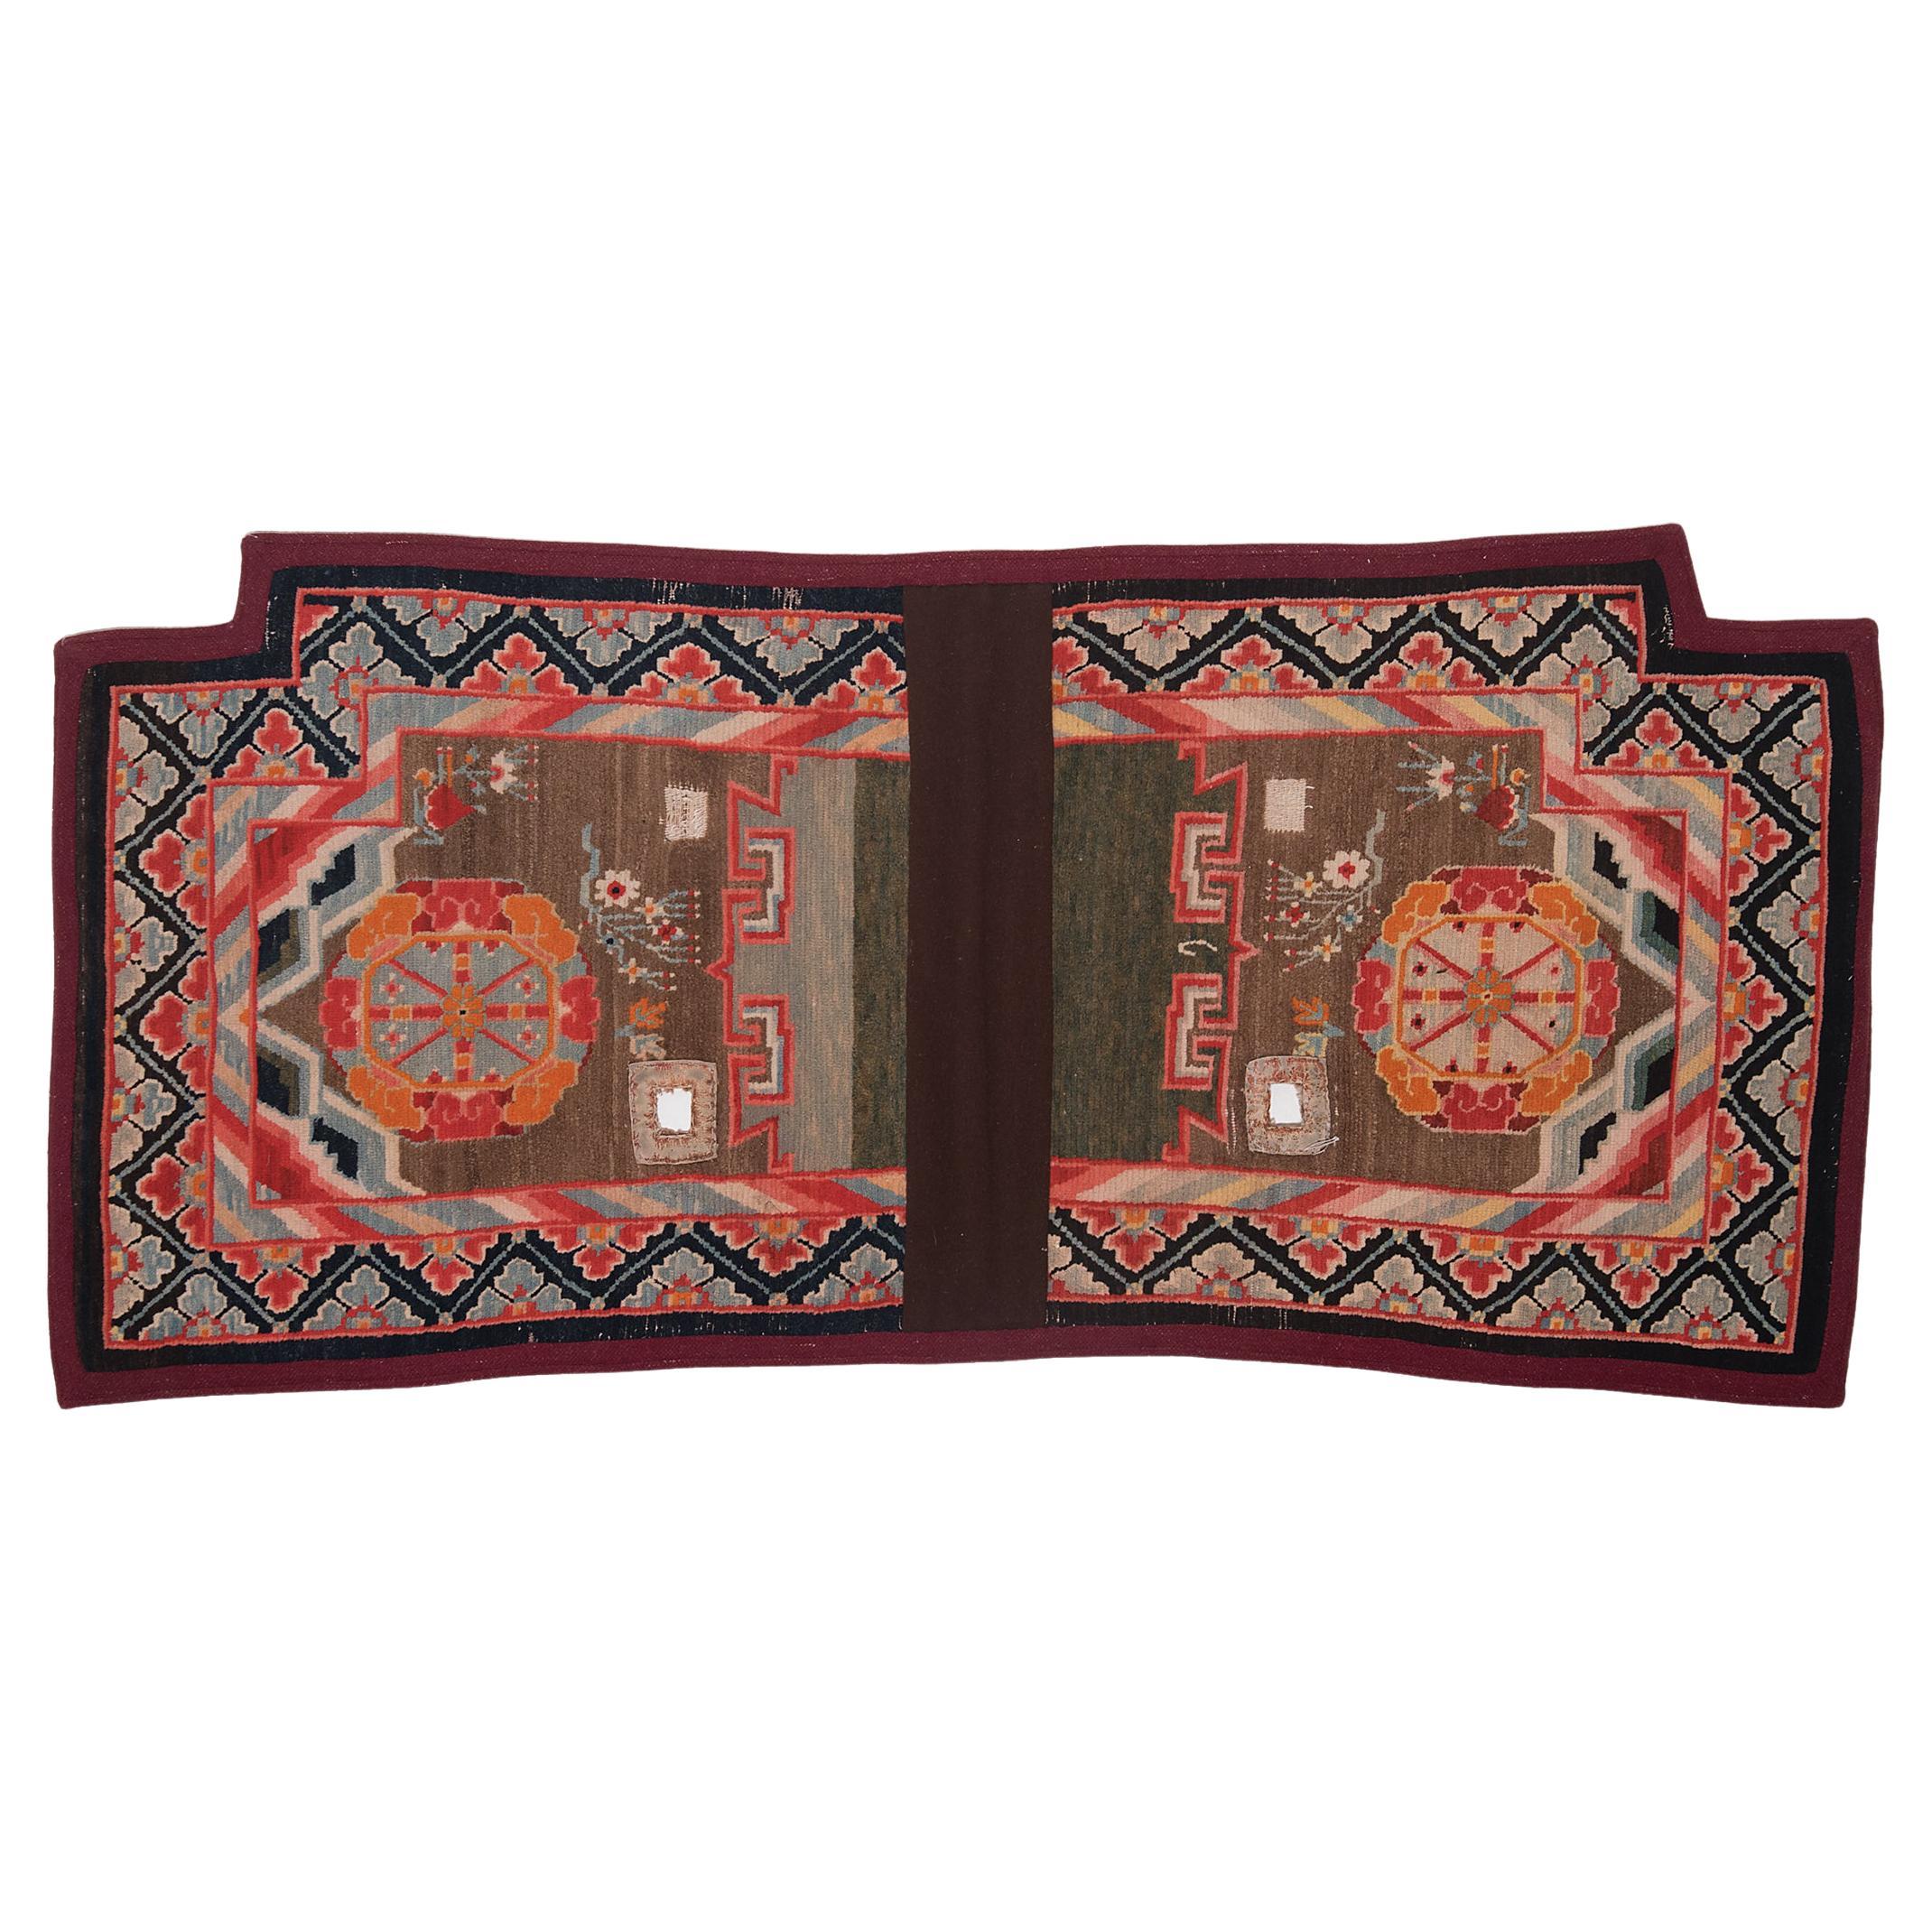 Tibetischer Sattelteppich mit Medaillons aus dem Rad des Lebens, um 1900